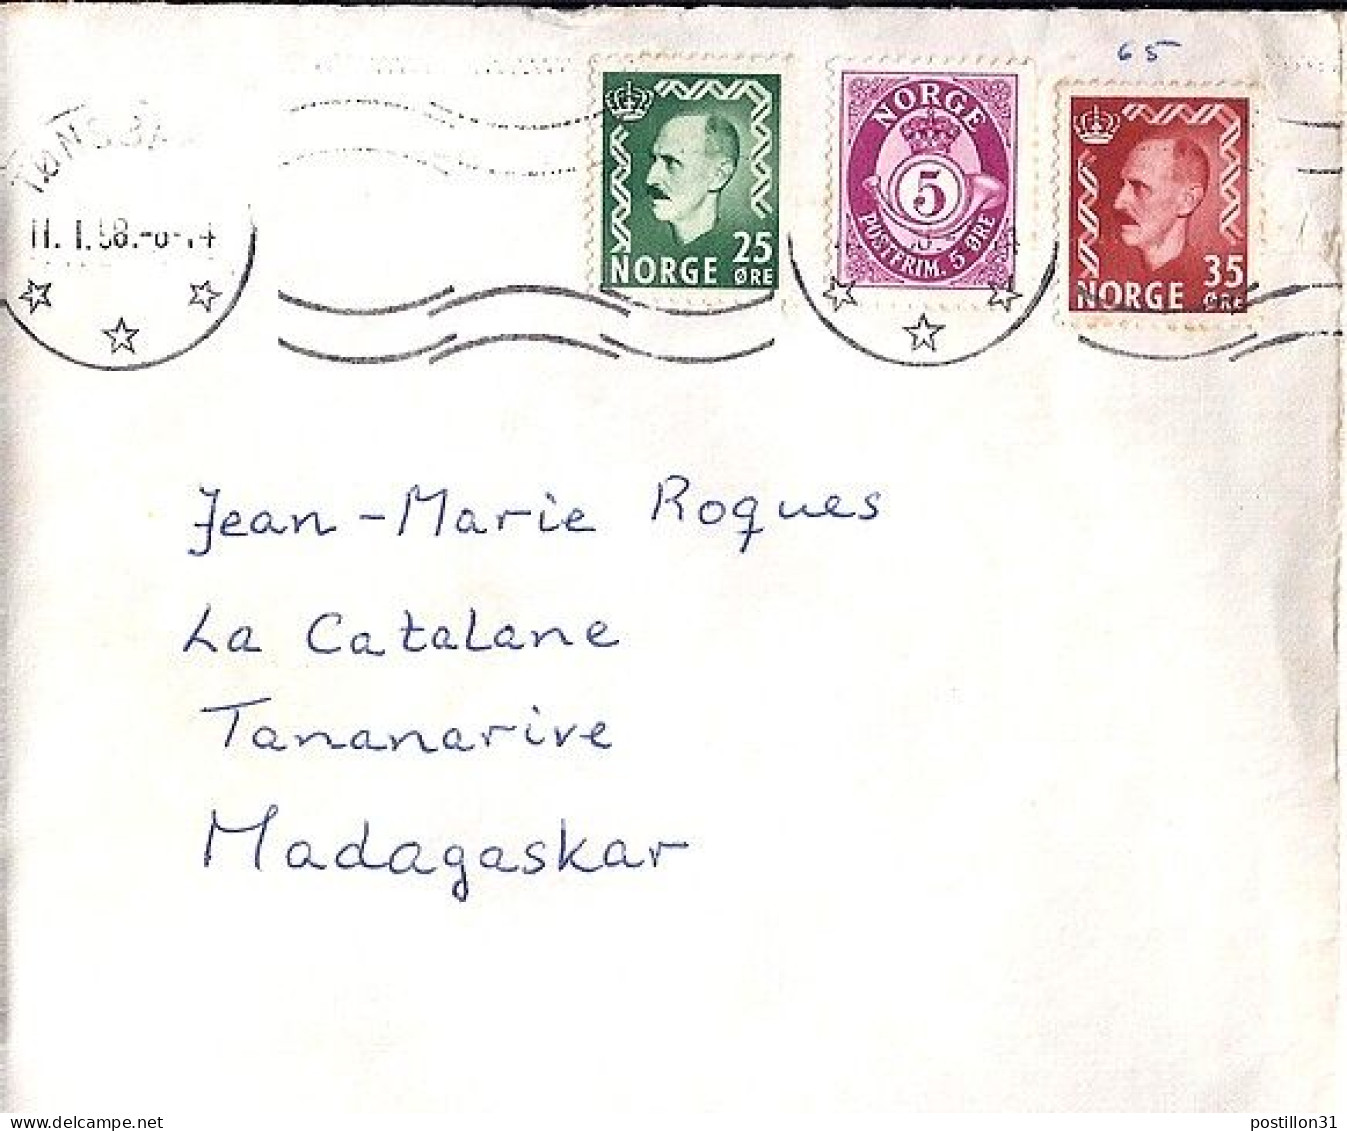 NORVEGE N° 361/362/171 S/L DU 11.1.58 POUR MADAGASCAR - Storia Postale